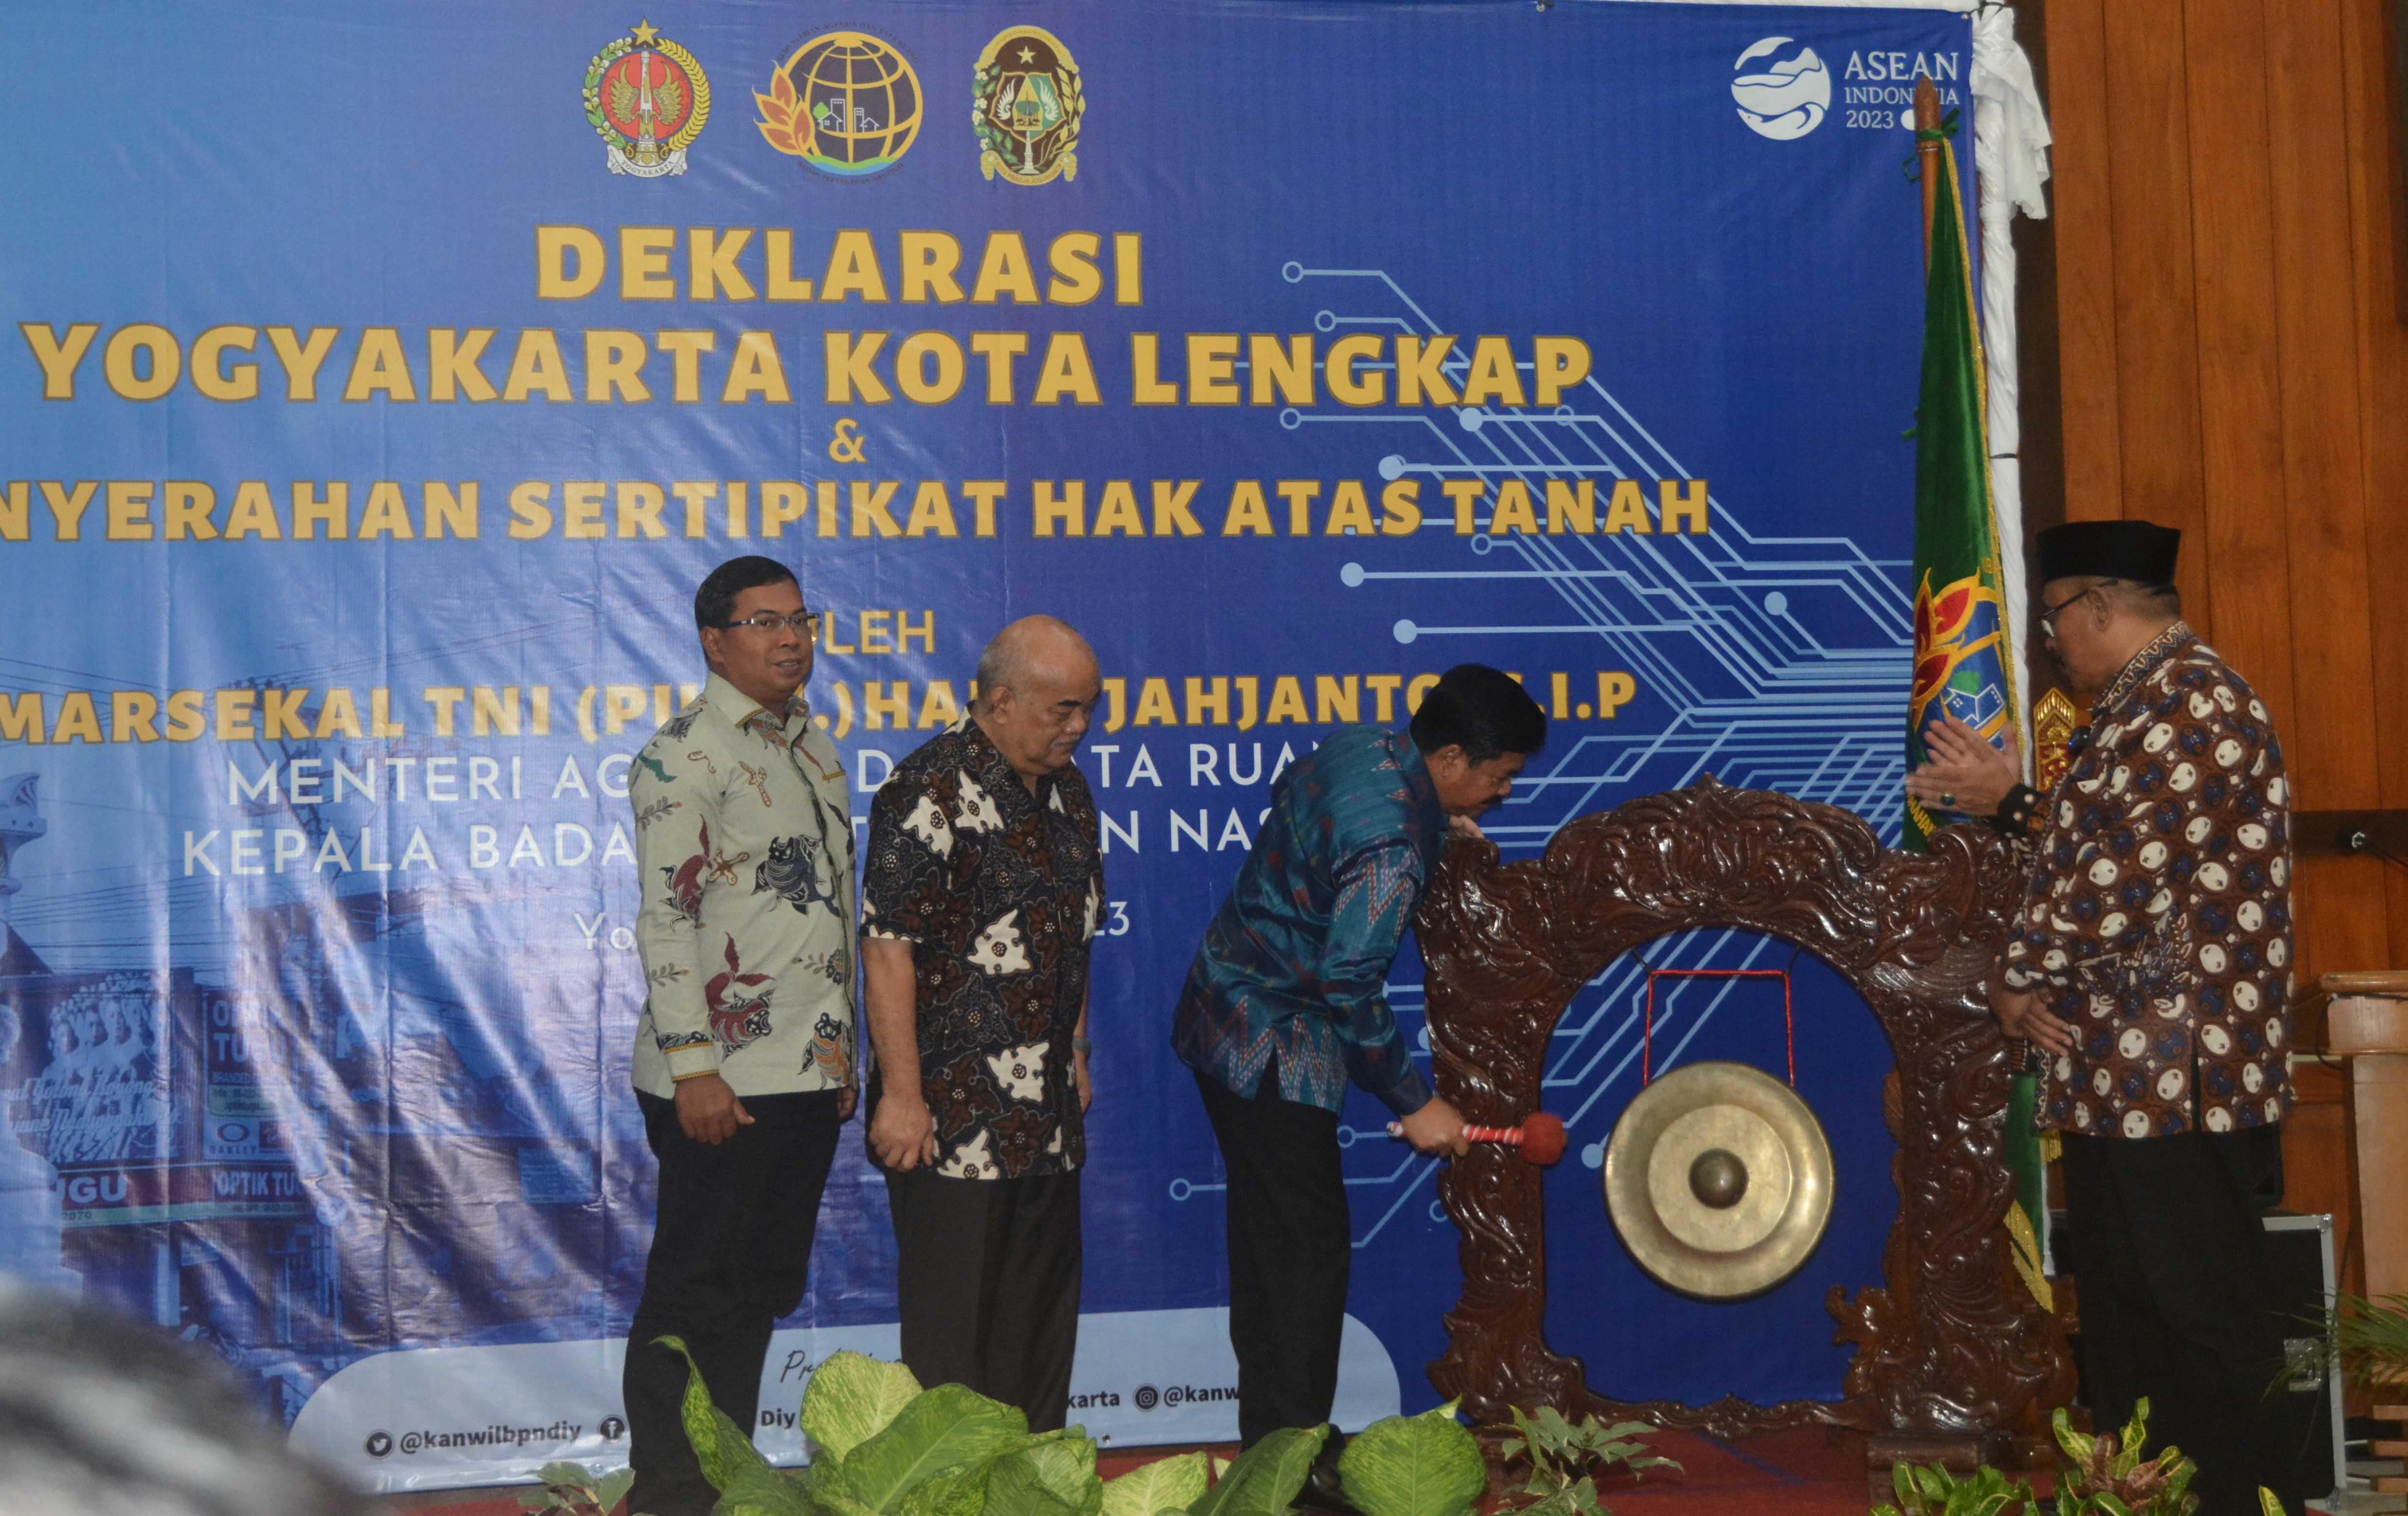 Menteri ATR Deklarasikan Yogyakarta Sebagai Kota Lengkap, Apa Artinya?